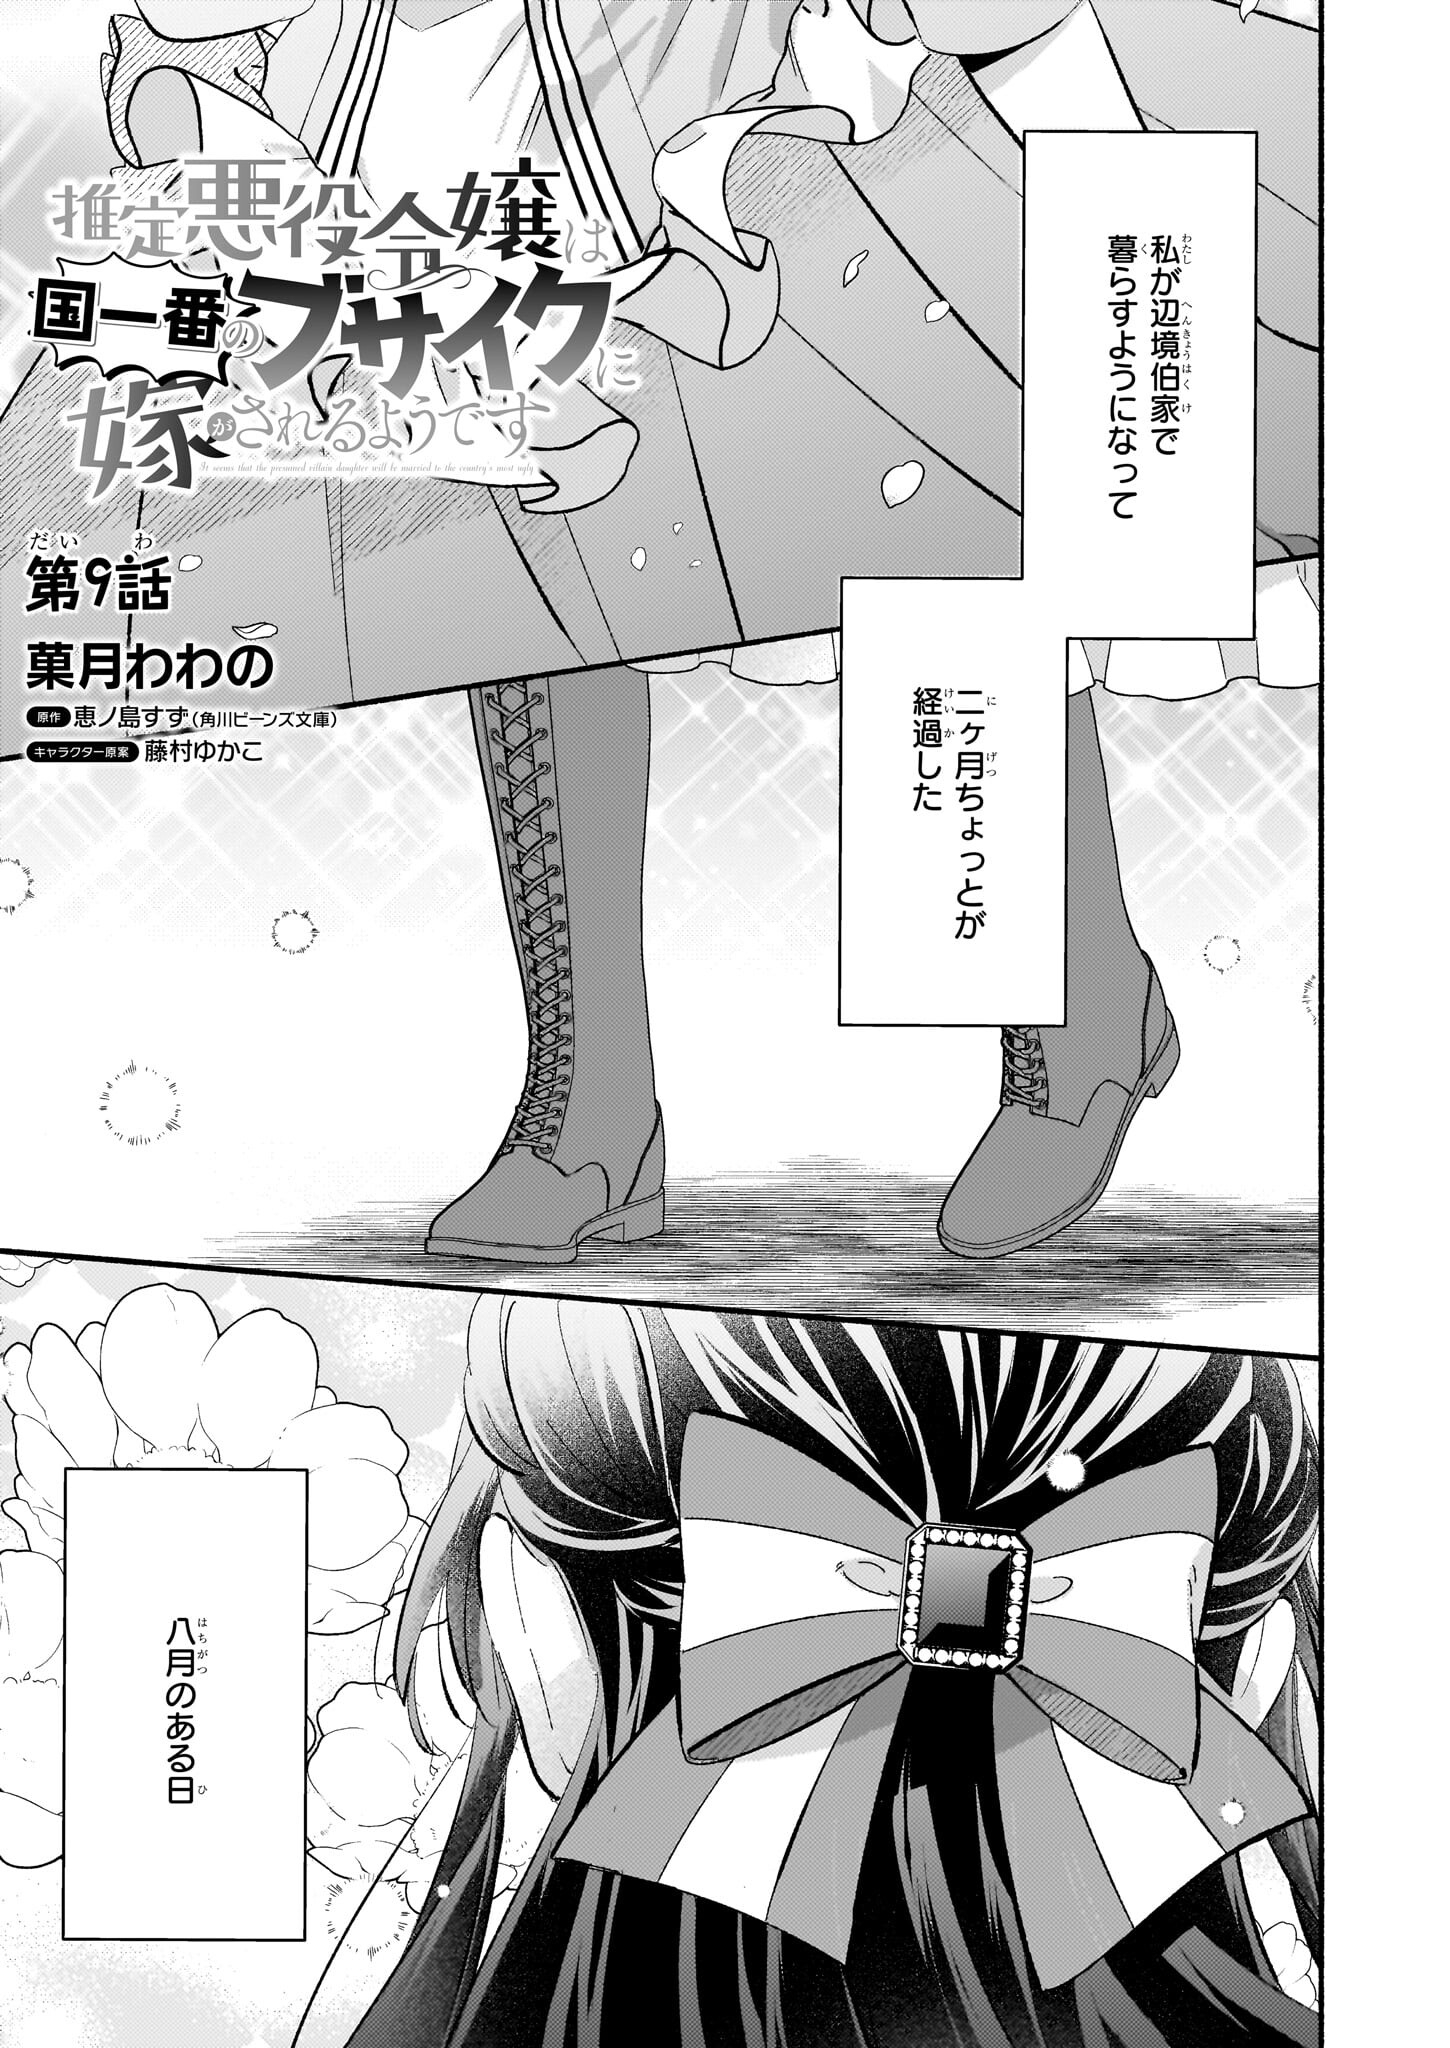 Suitei Akuyaku Reijou wa Koku Ichiban no Busaiku ni Totsugasareru you desu - Chapter 9 - Page 1